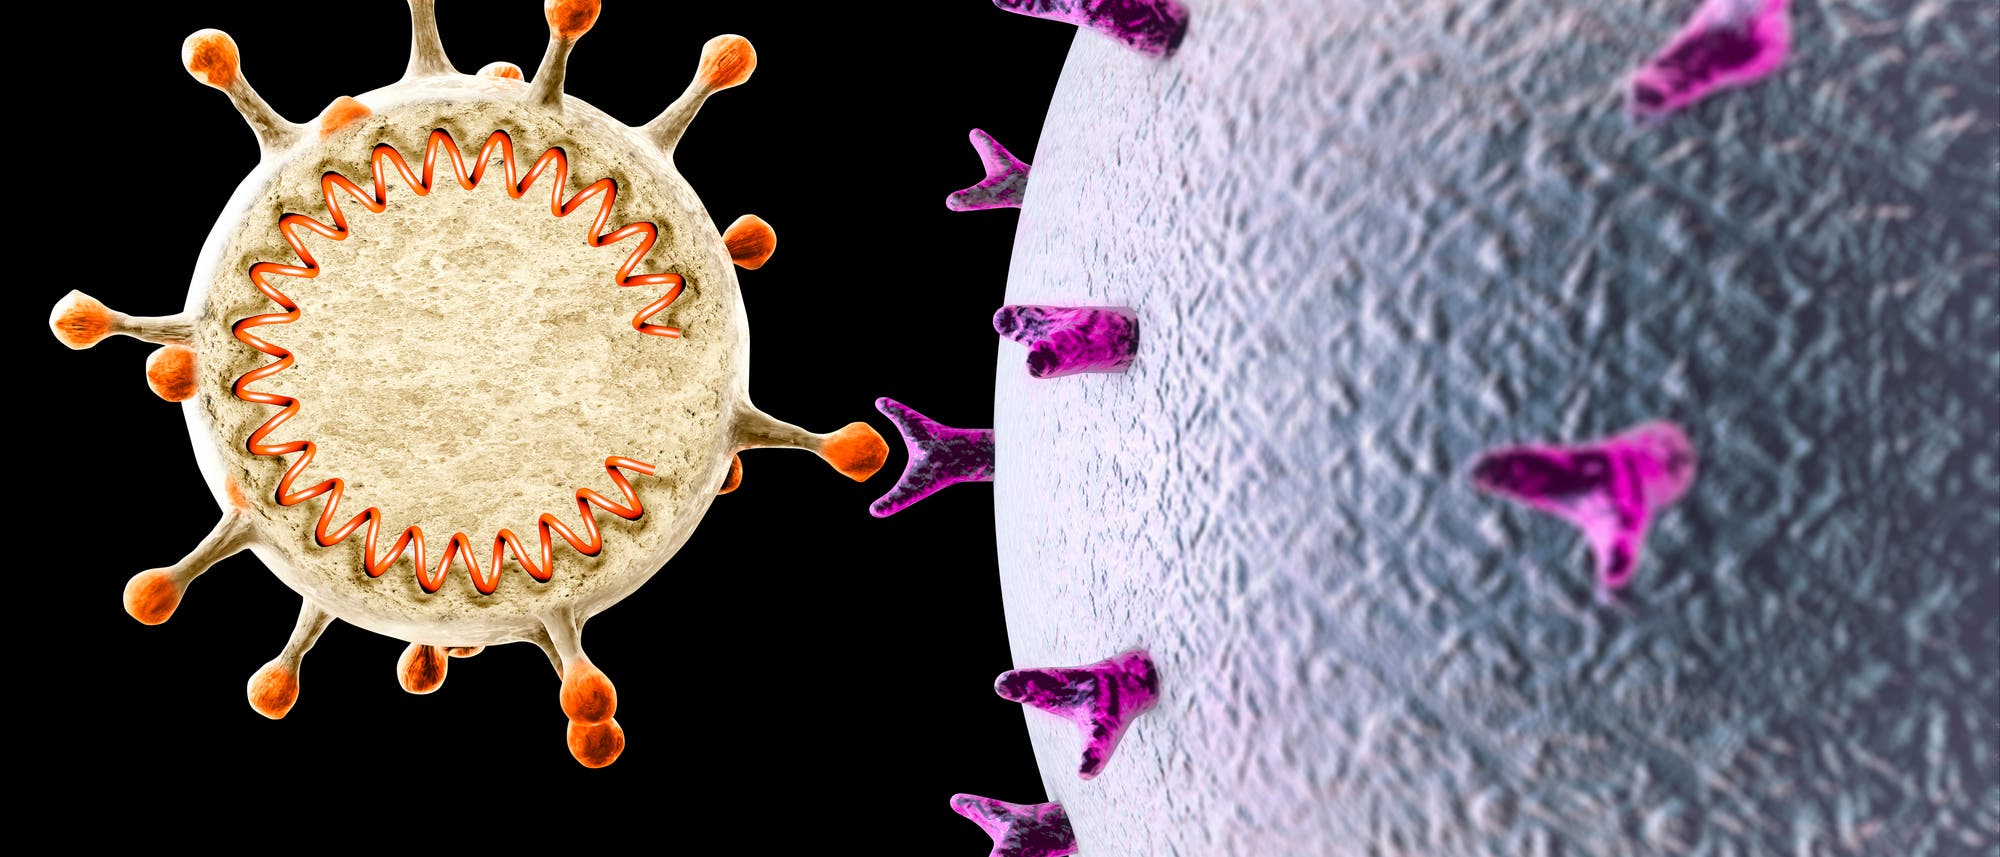 Illustration: Coronavirus dockt mit Hilfe des Spikeproteins an eine Wirtszelle an.